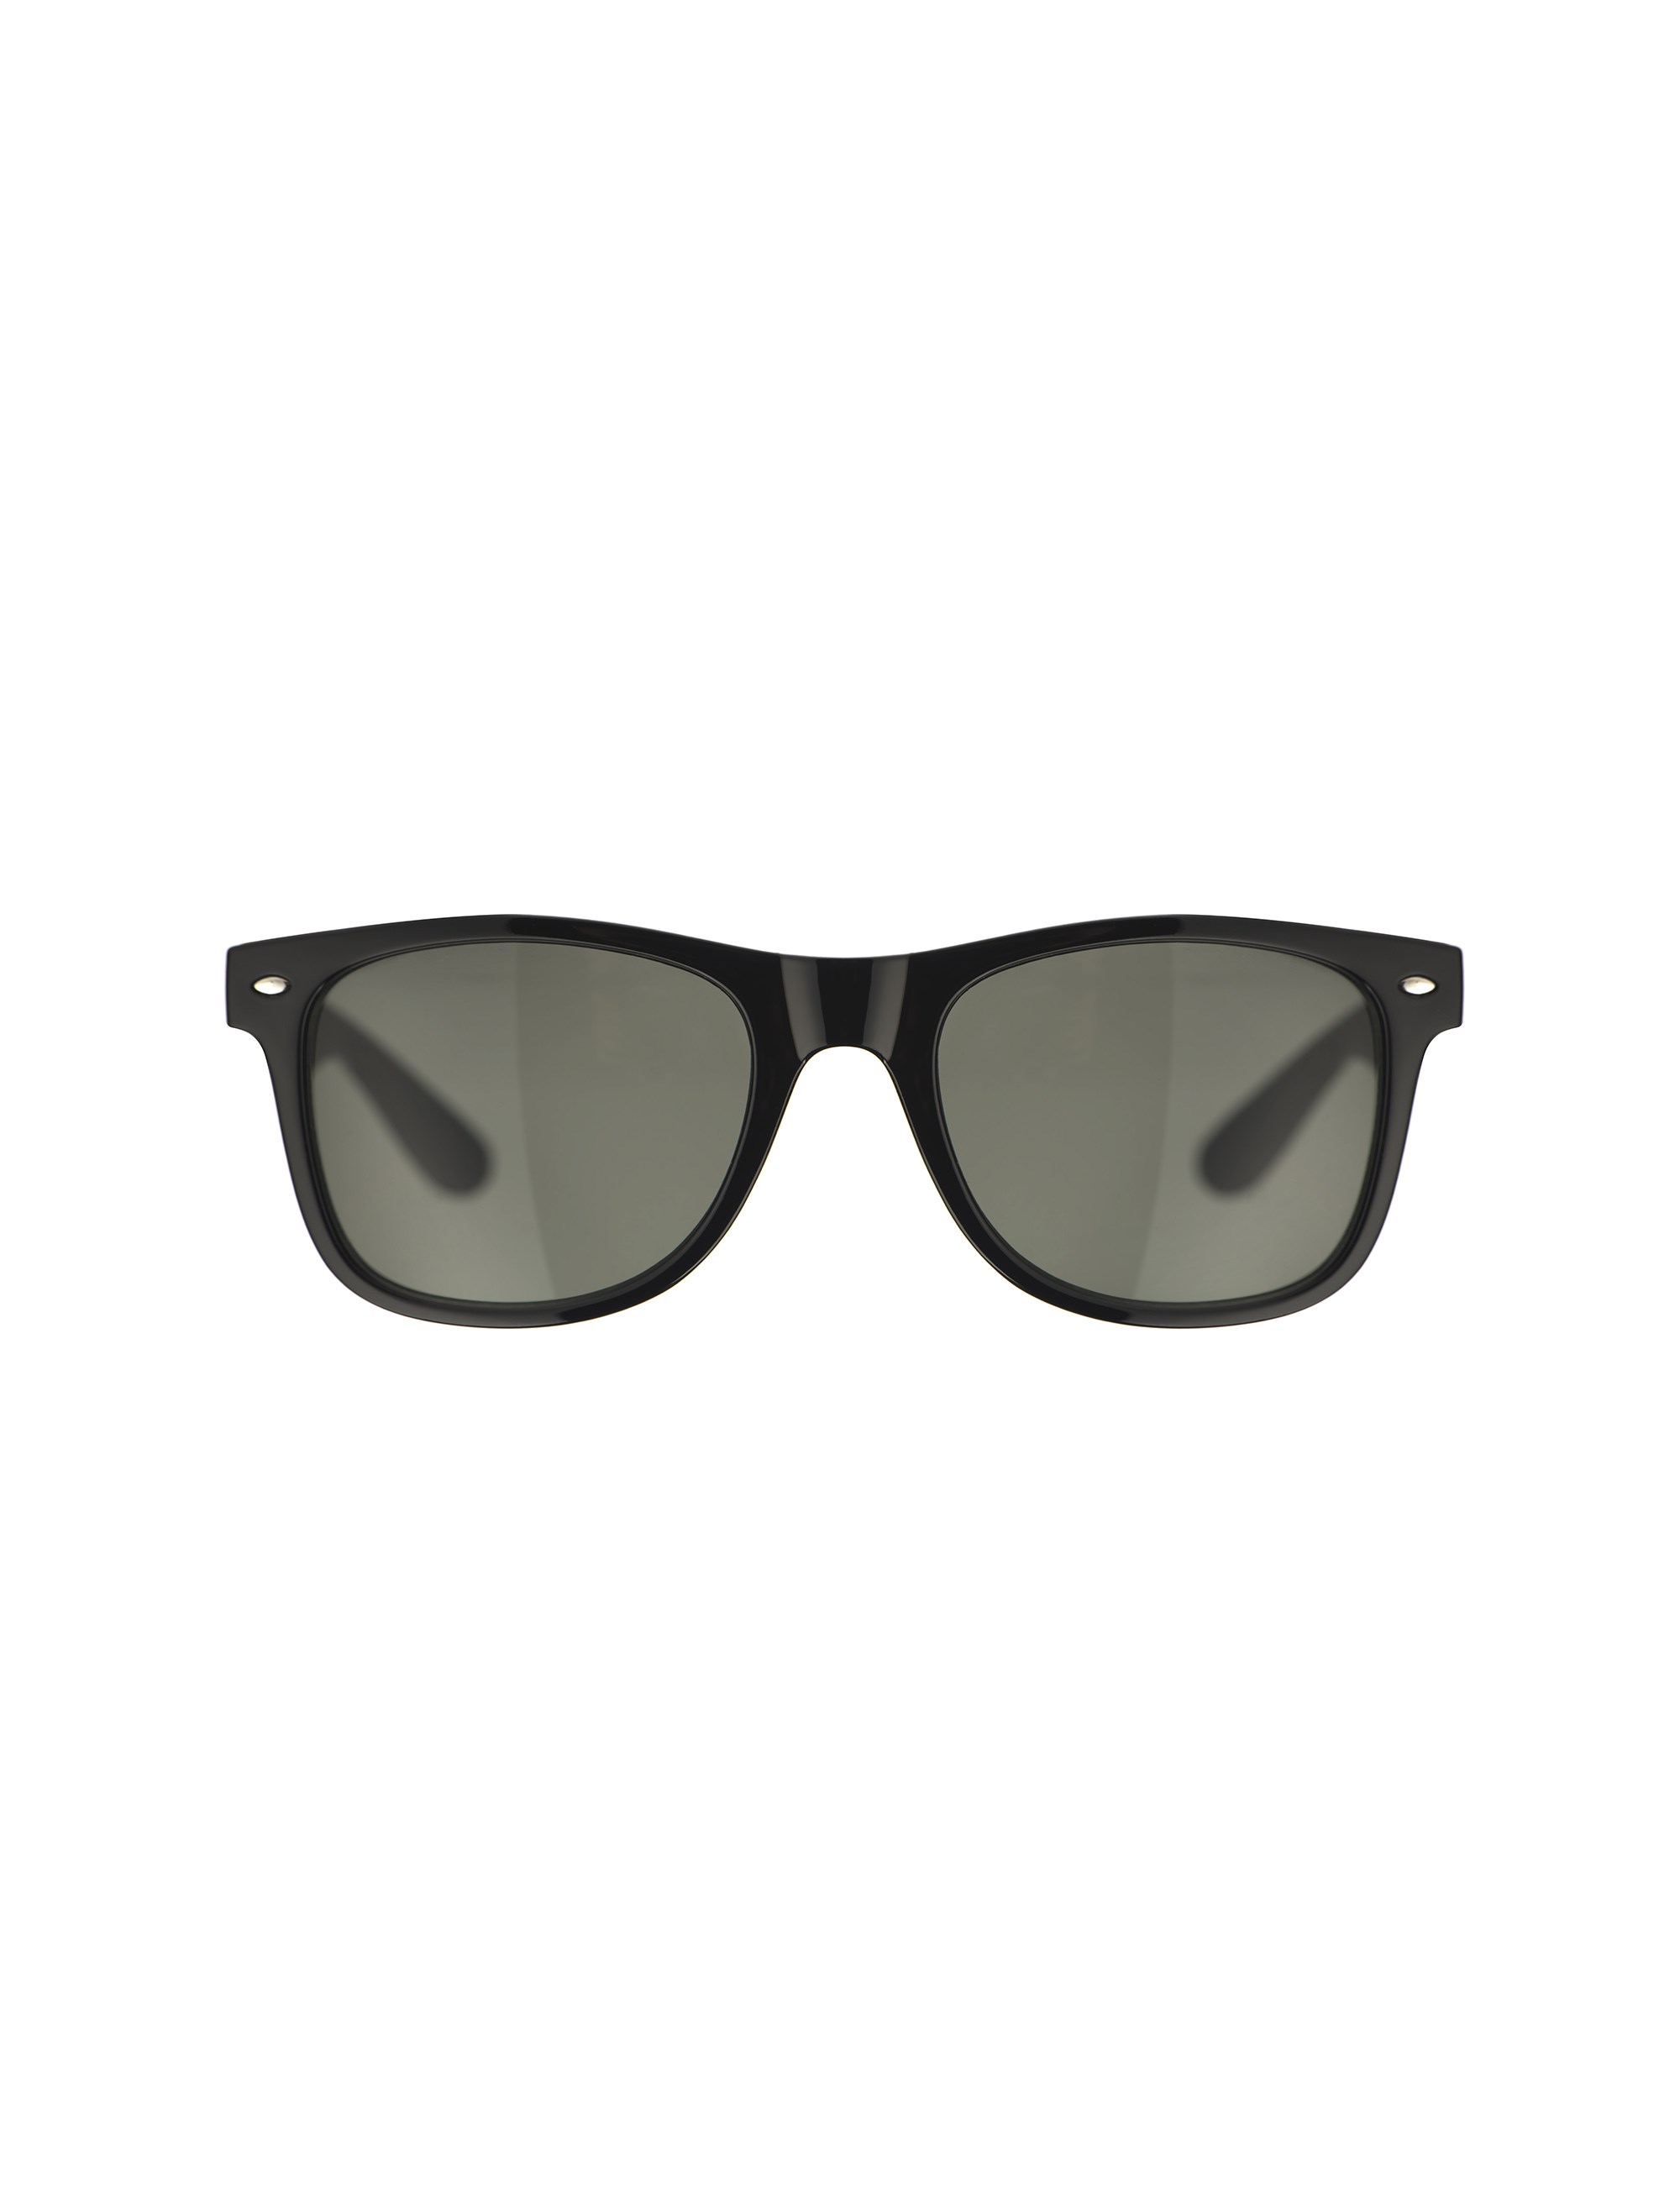 عینک آفتابی مربعی زنانه - اونلی تک سایز - مشکي - 2